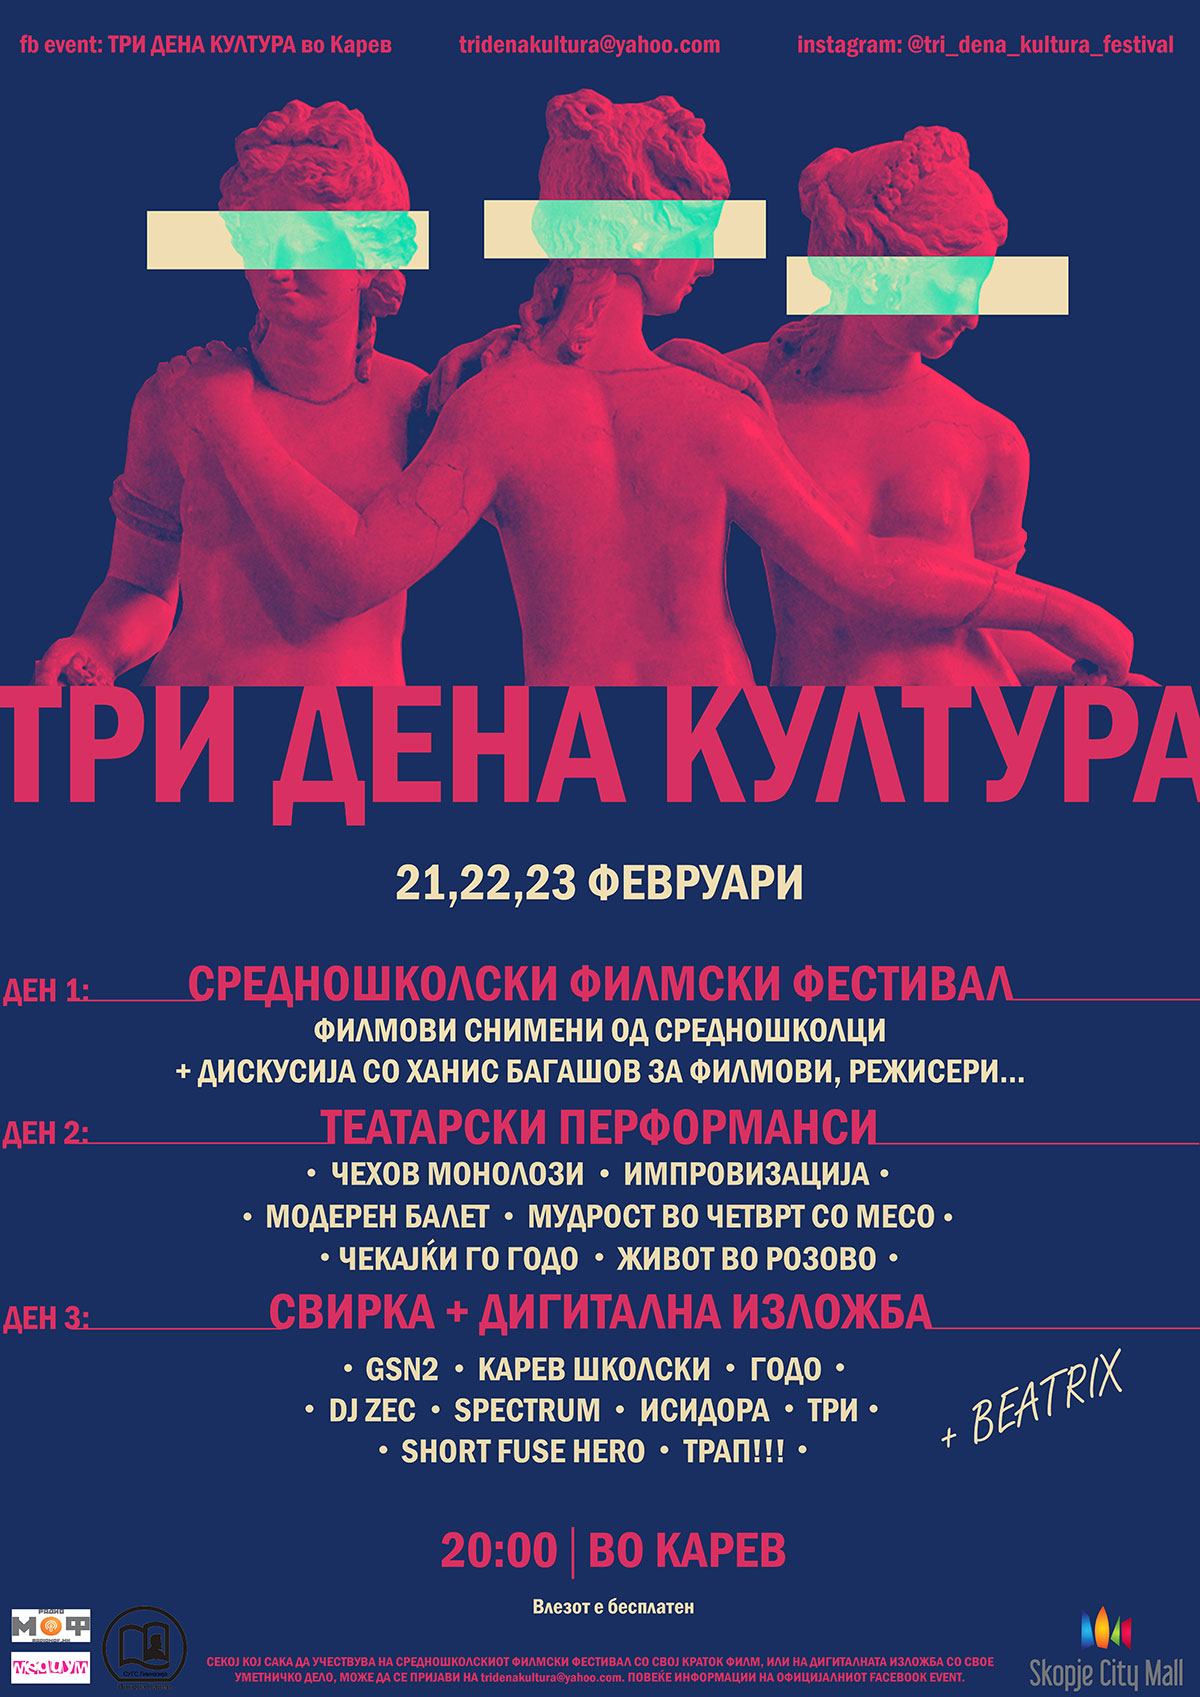 filmski i teatarski festival vo nikola karev 2